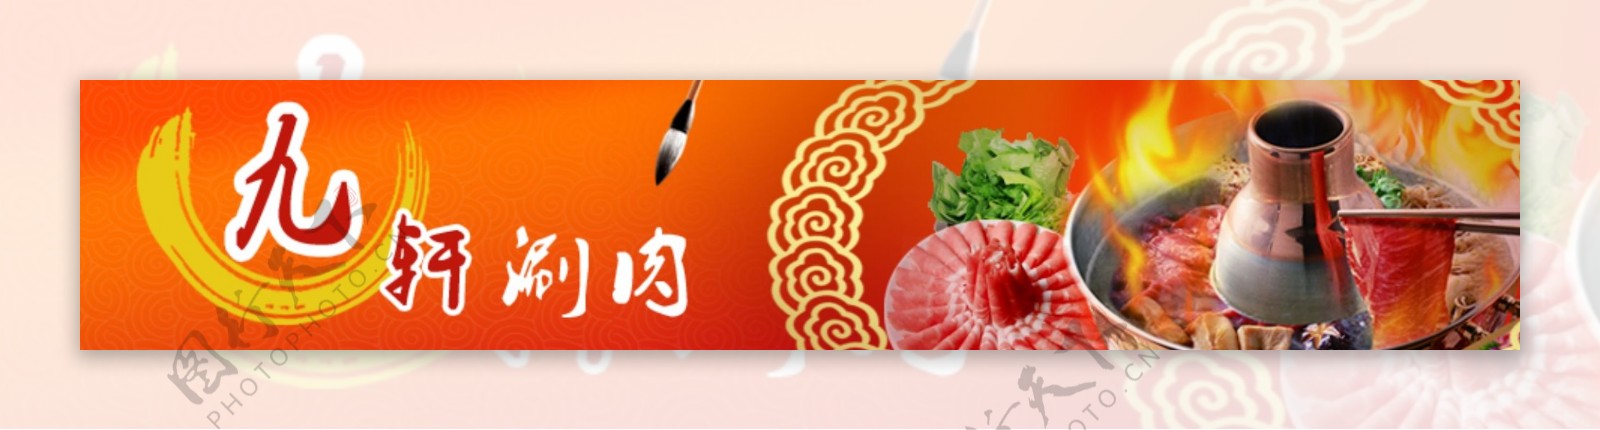 火锅网页banner设计psd分层模板图片